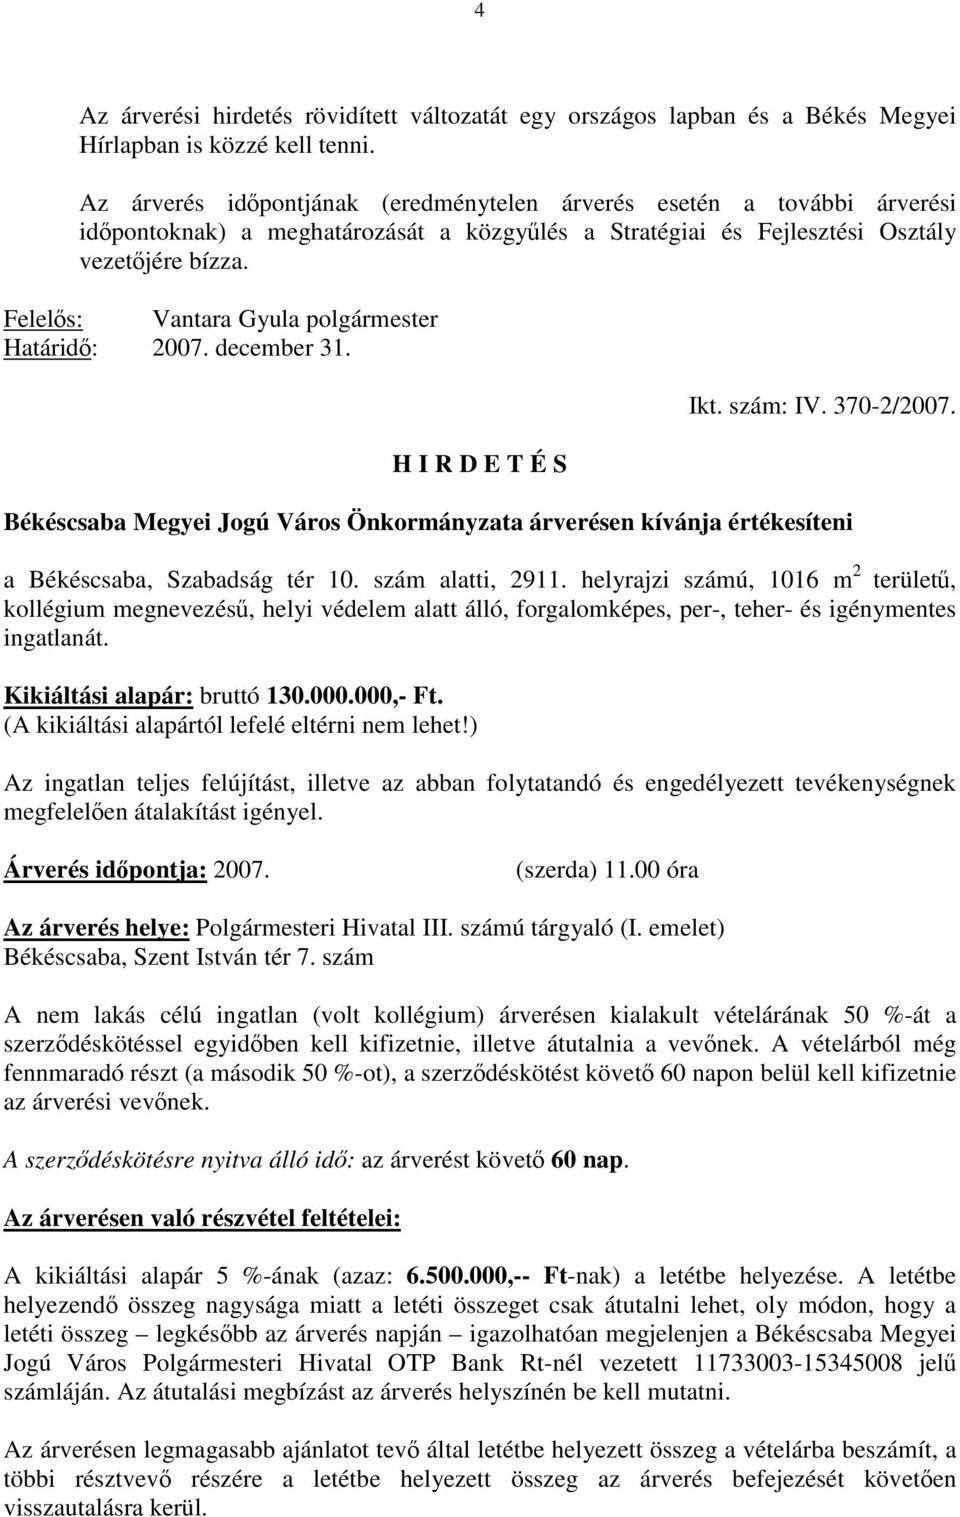 Felelős: Vantara Gyula polgármester Határidő: 2007. december 31. H I R D E T É S Ikt. szám: IV. 370-2/2007.